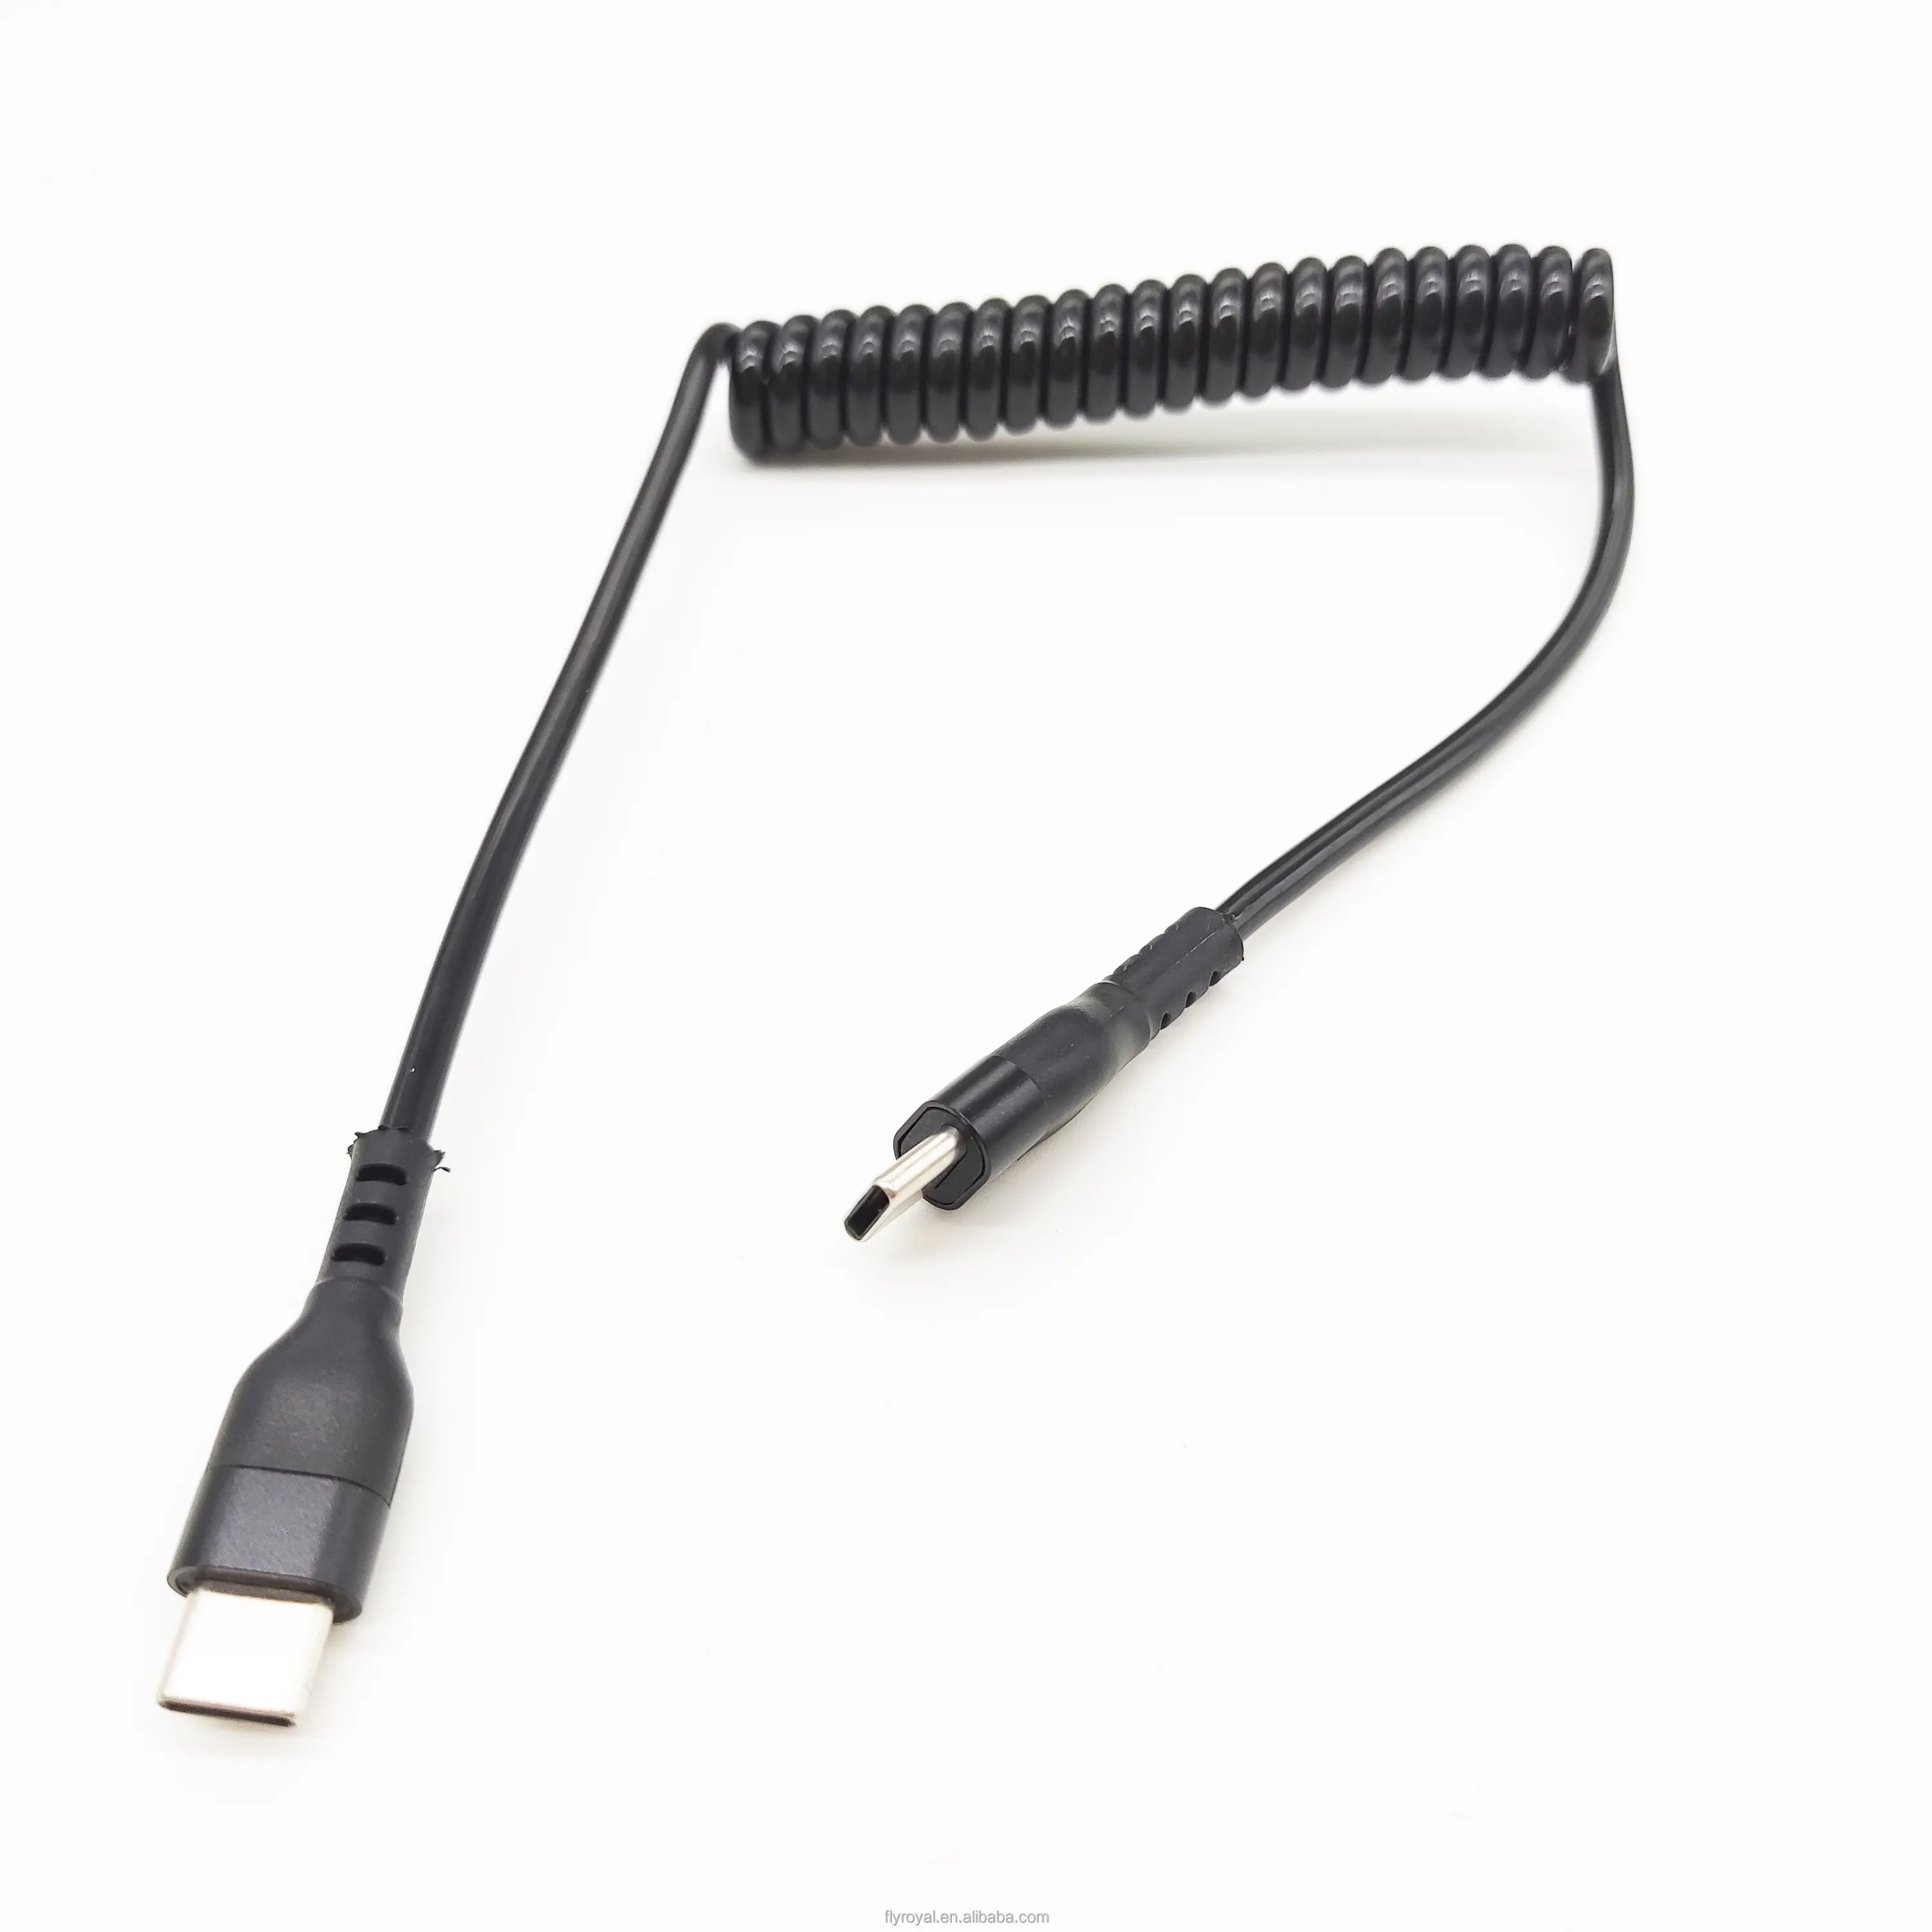 Cabo USB-C enrolado com mola elástica durável cabo USB tipo C